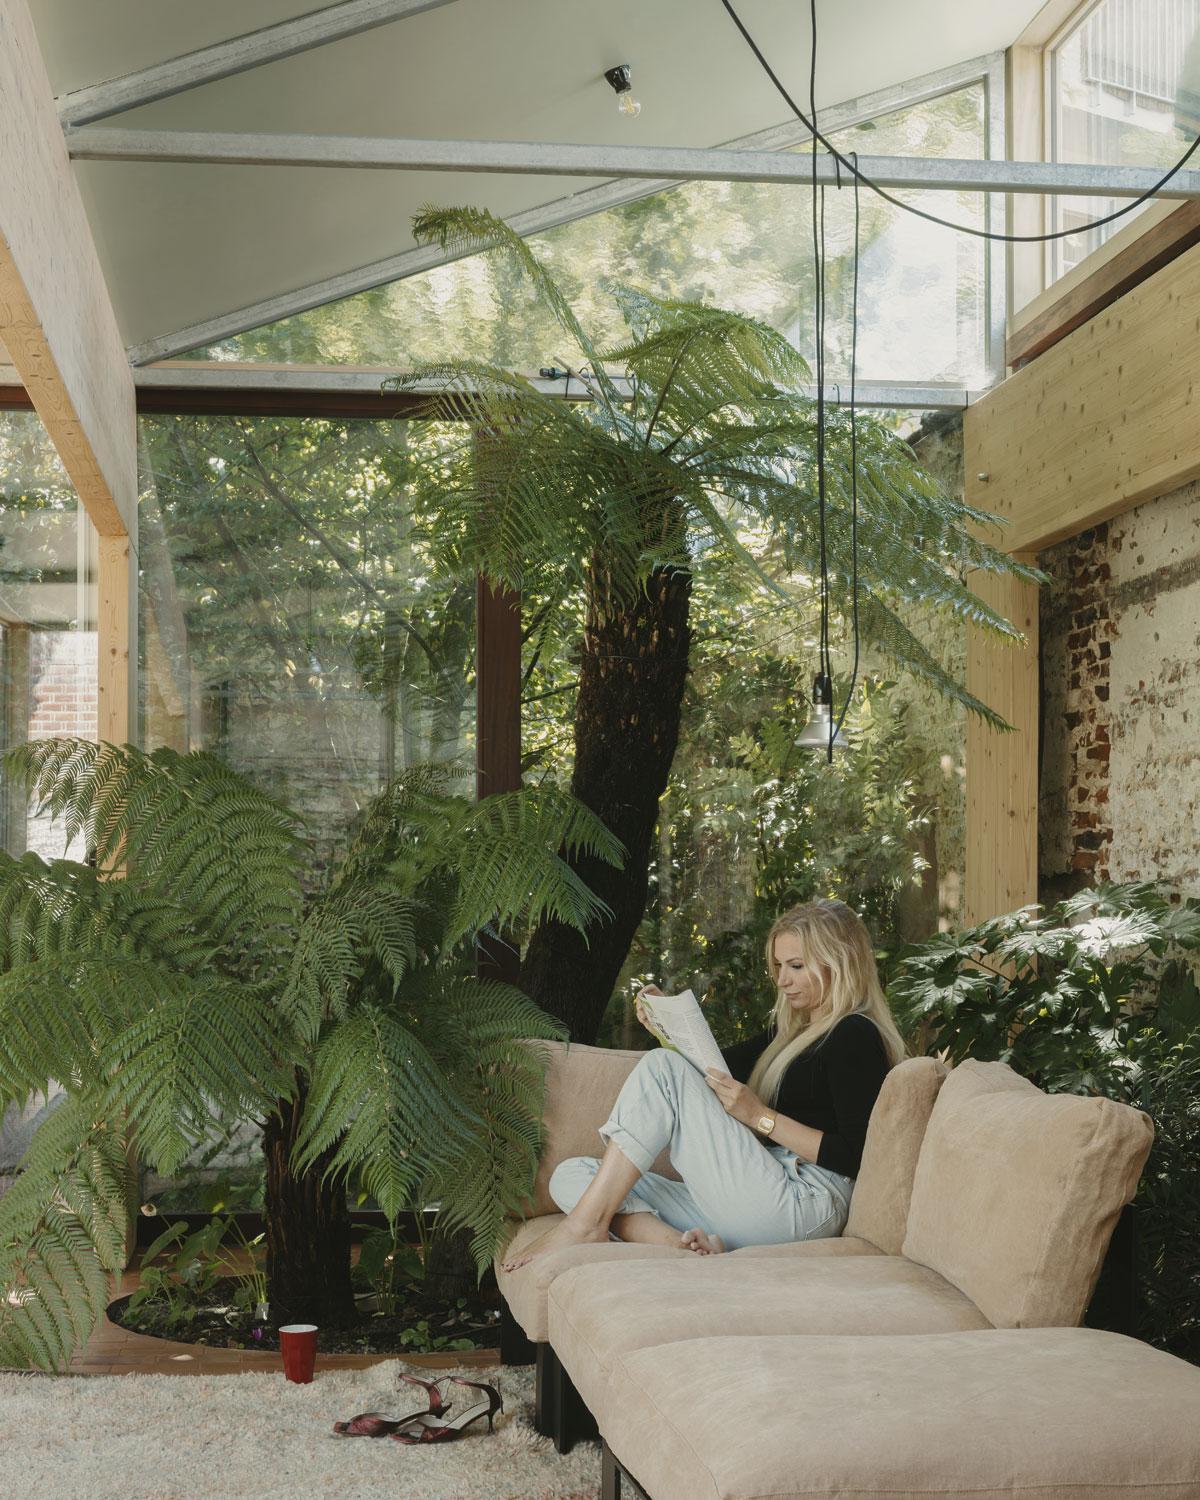 Bewoonster Céline Cousaert naast de boomvaren, in een sofa van Bea Mombaerts voor Serax, tijdens een zeldzaam rustig moment.